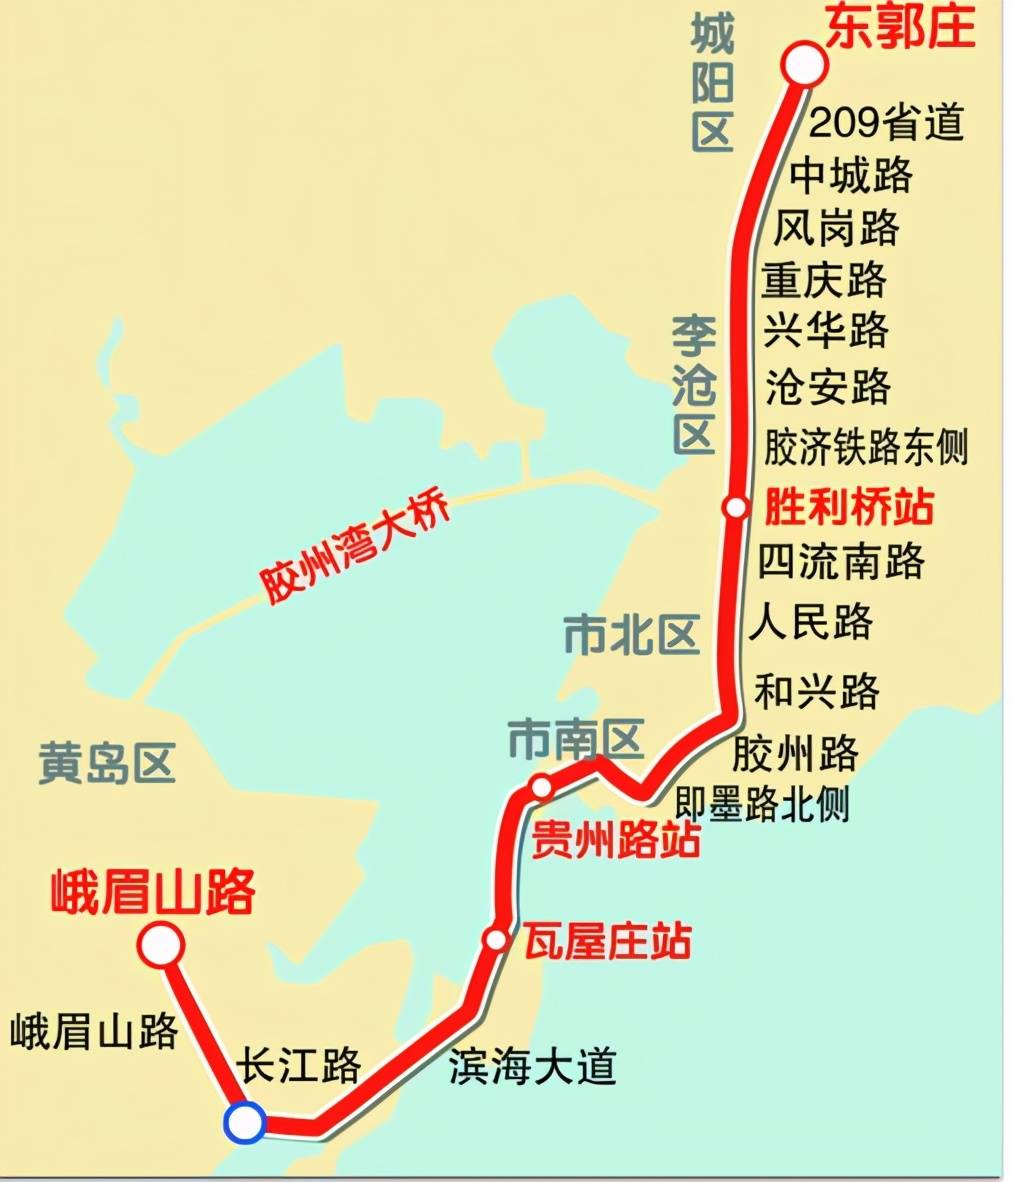 青岛地铁1号线南段完成铺轨70%,王家港站至青岛北站年底将空载试运行